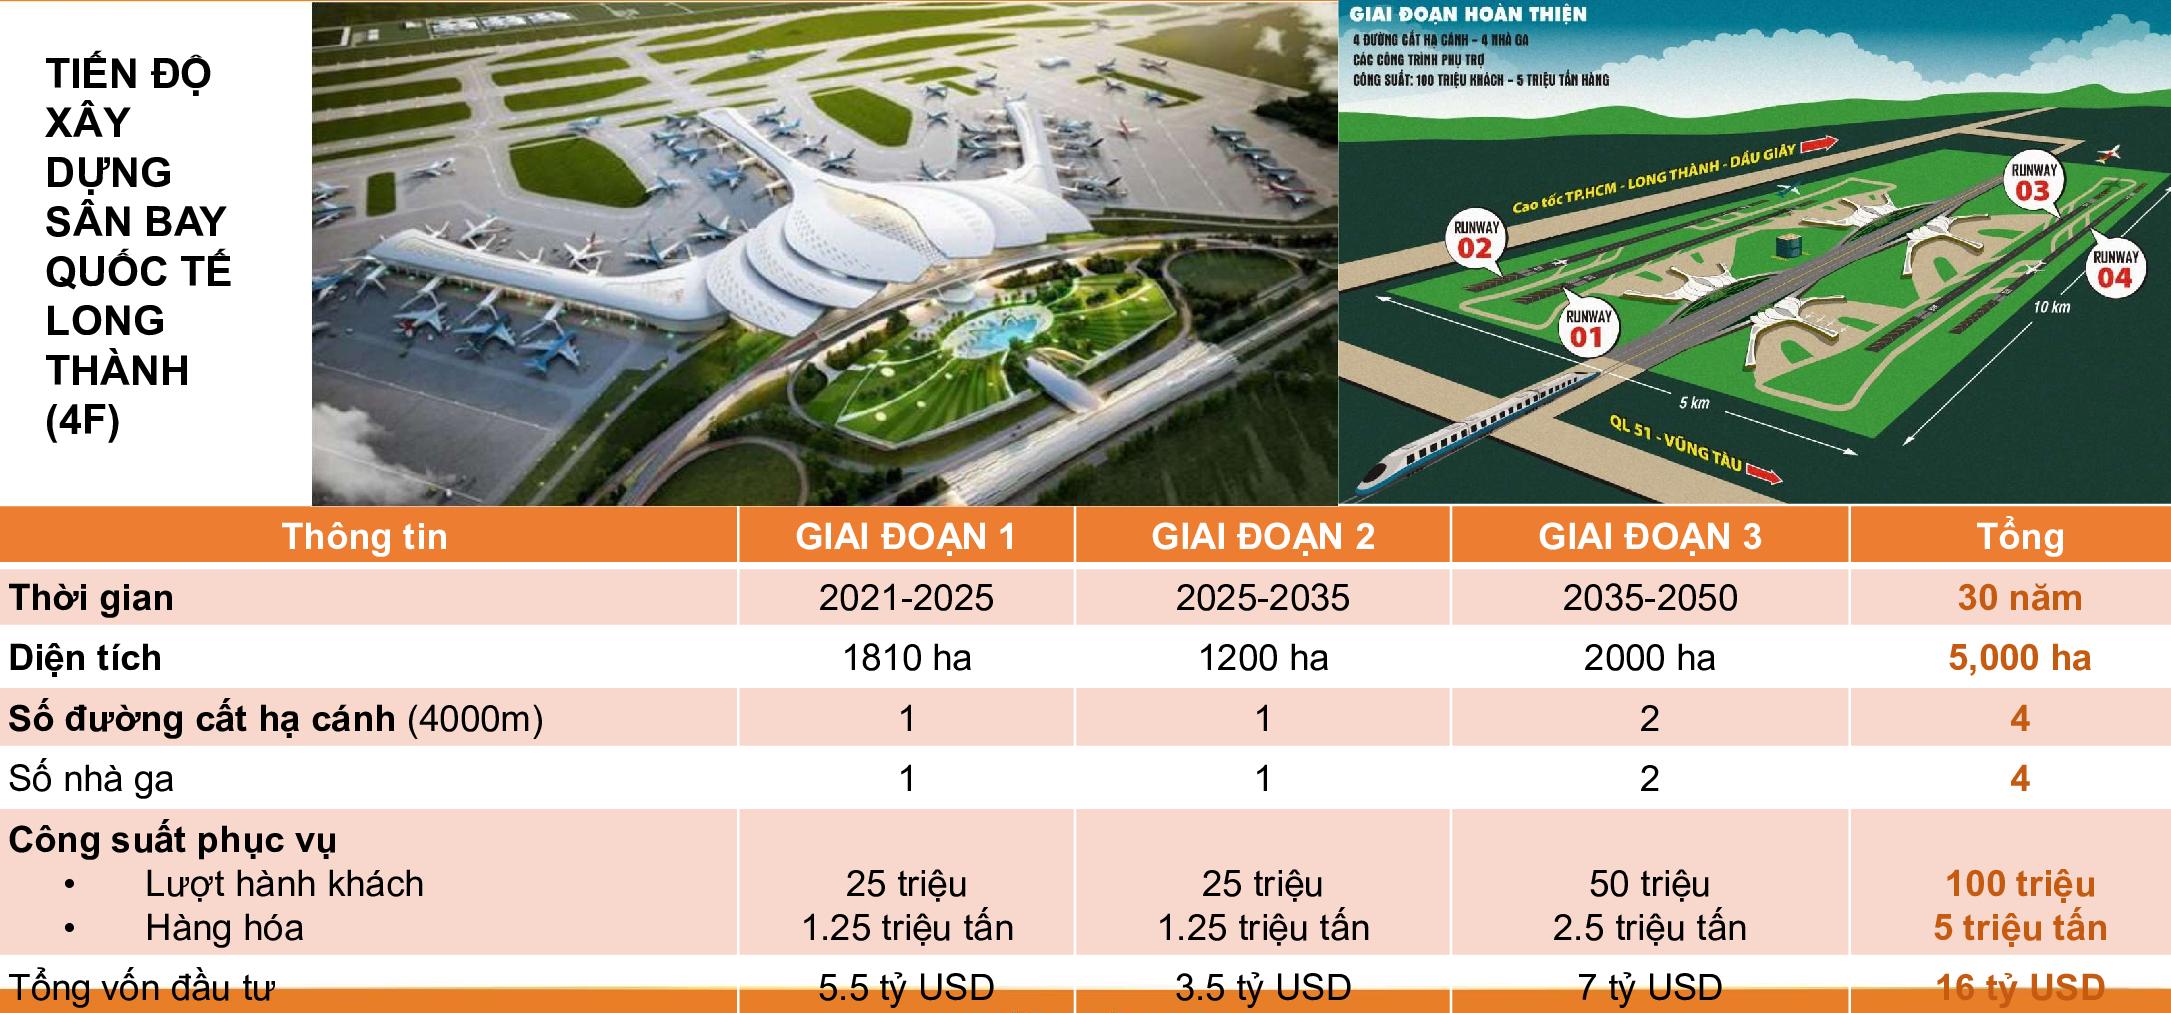 Lịch trình tiến độ xây dựng sân bay Quốc tế Long Thành (4F) 